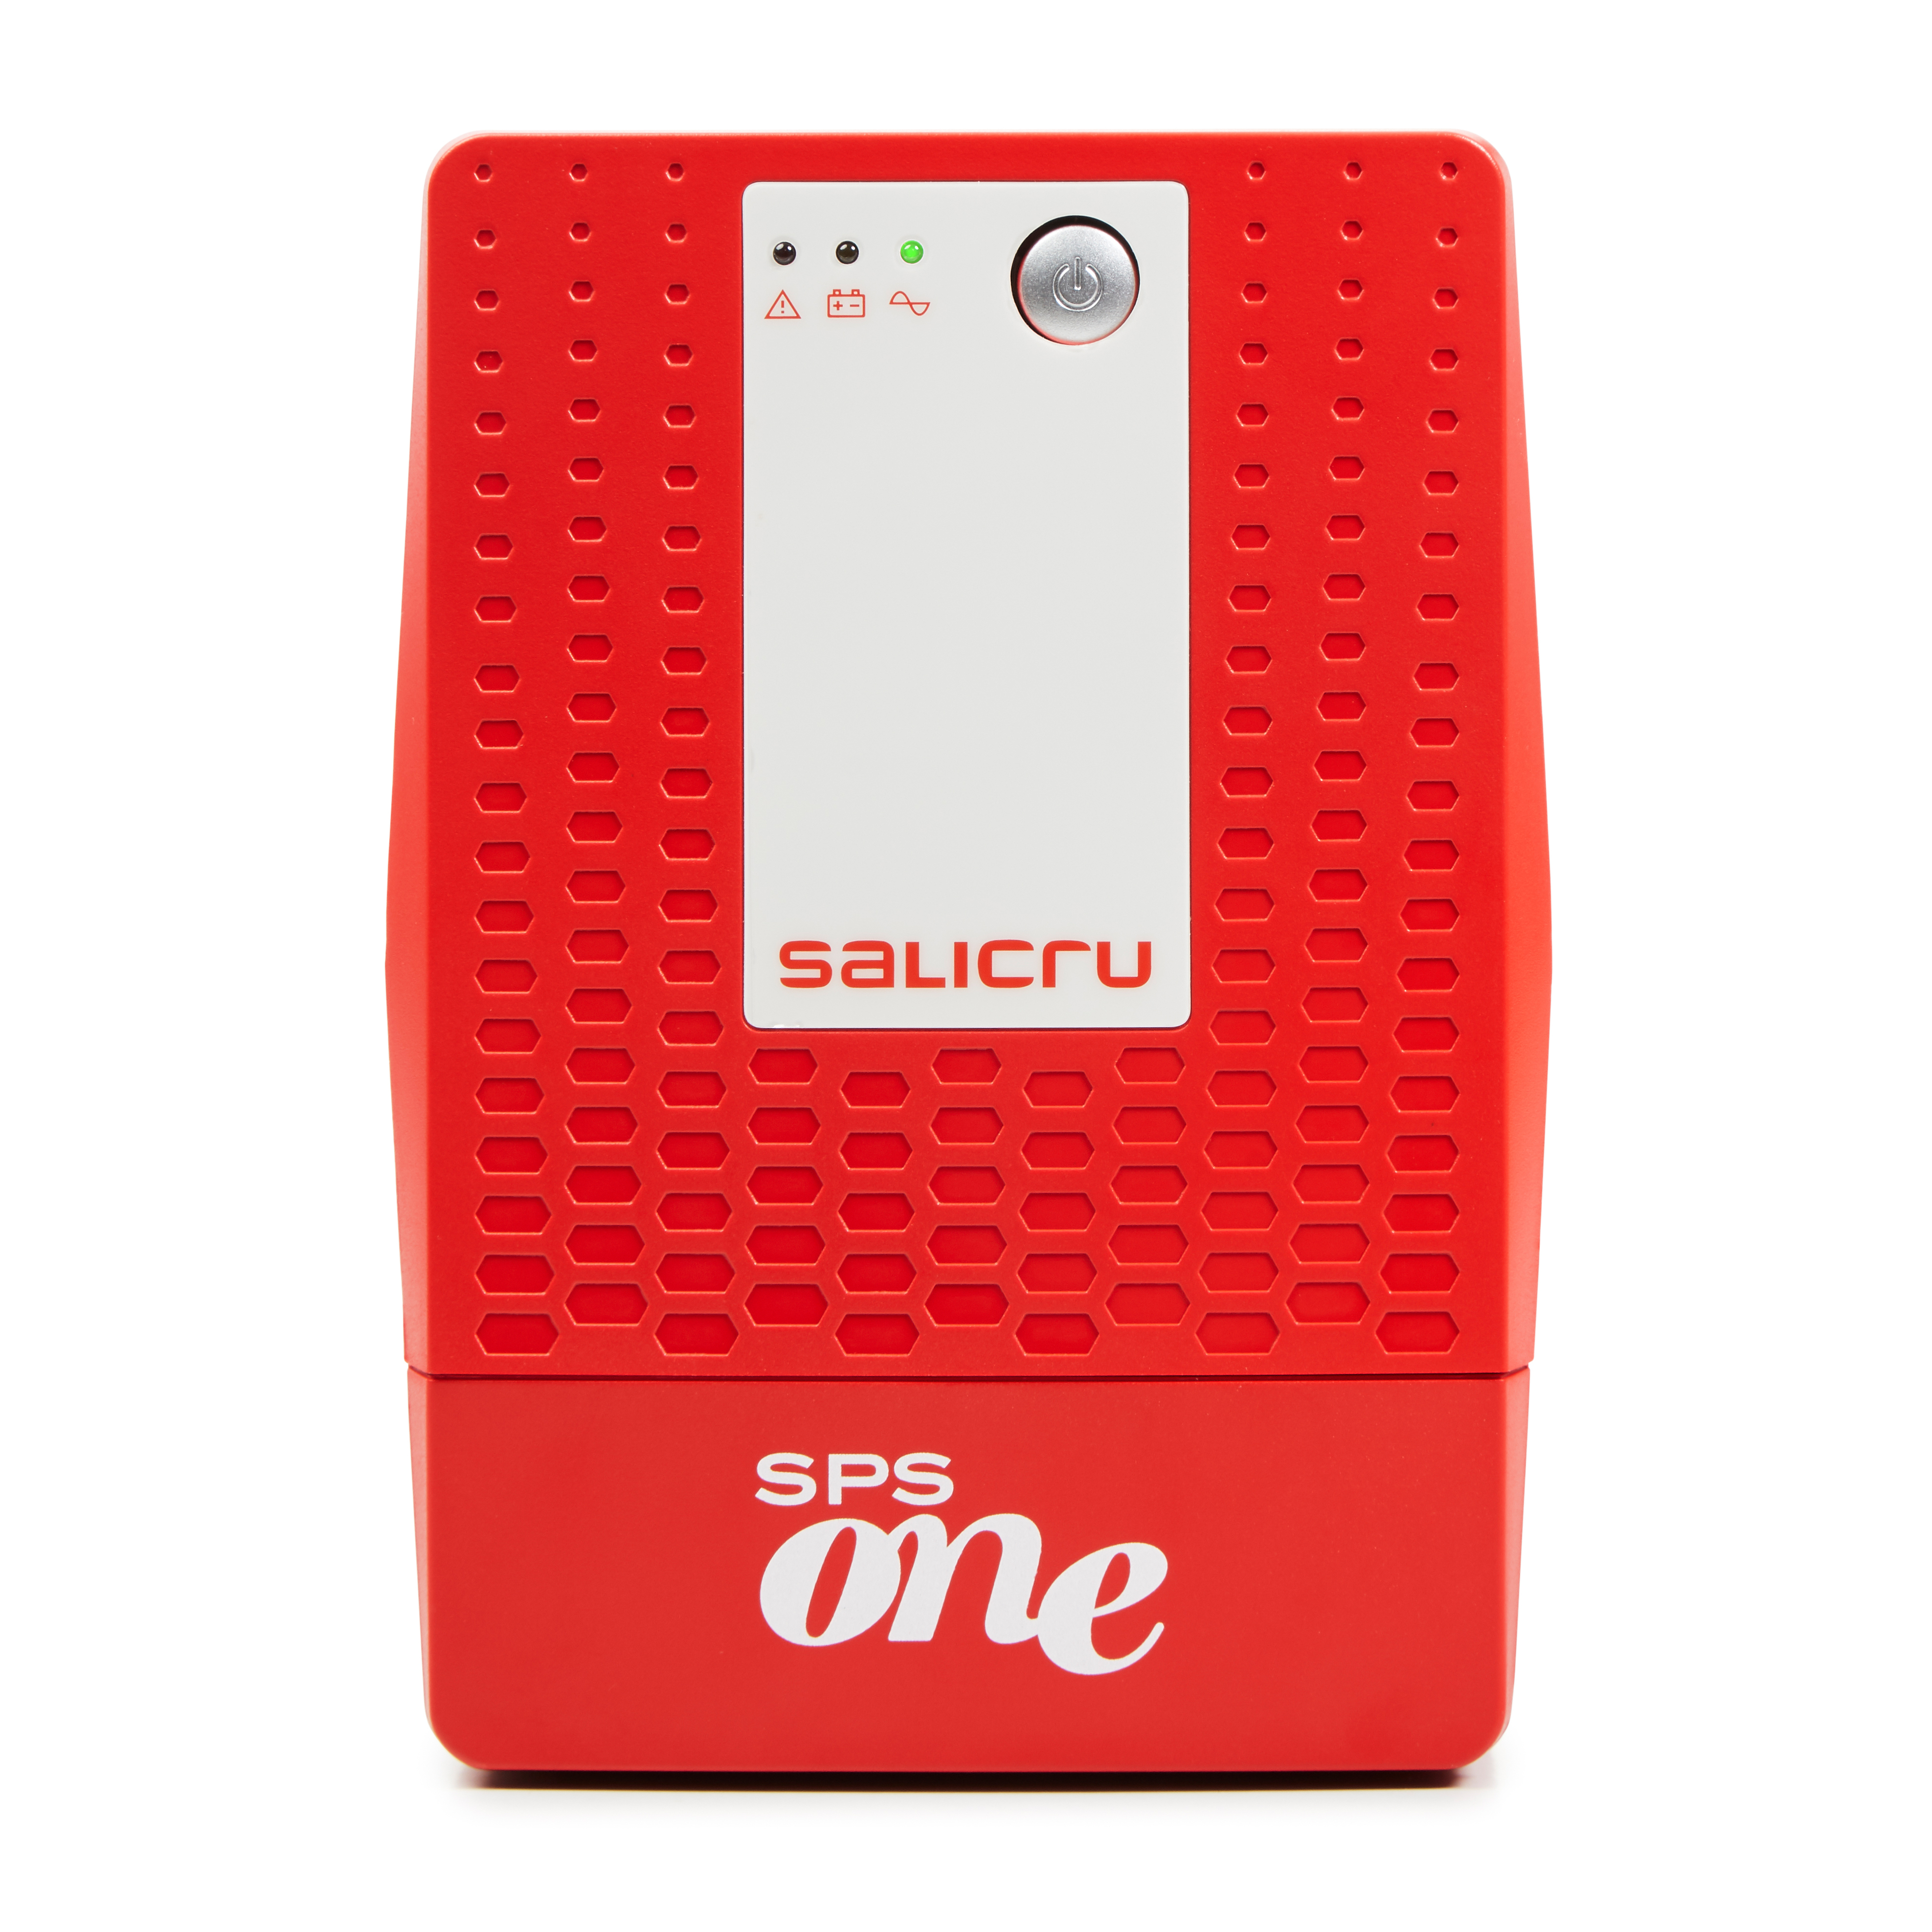 SALICRU USV SPS 1100 ONE IEC Line Int 4 Plugs 1100VA/600W - (Offline-) USV